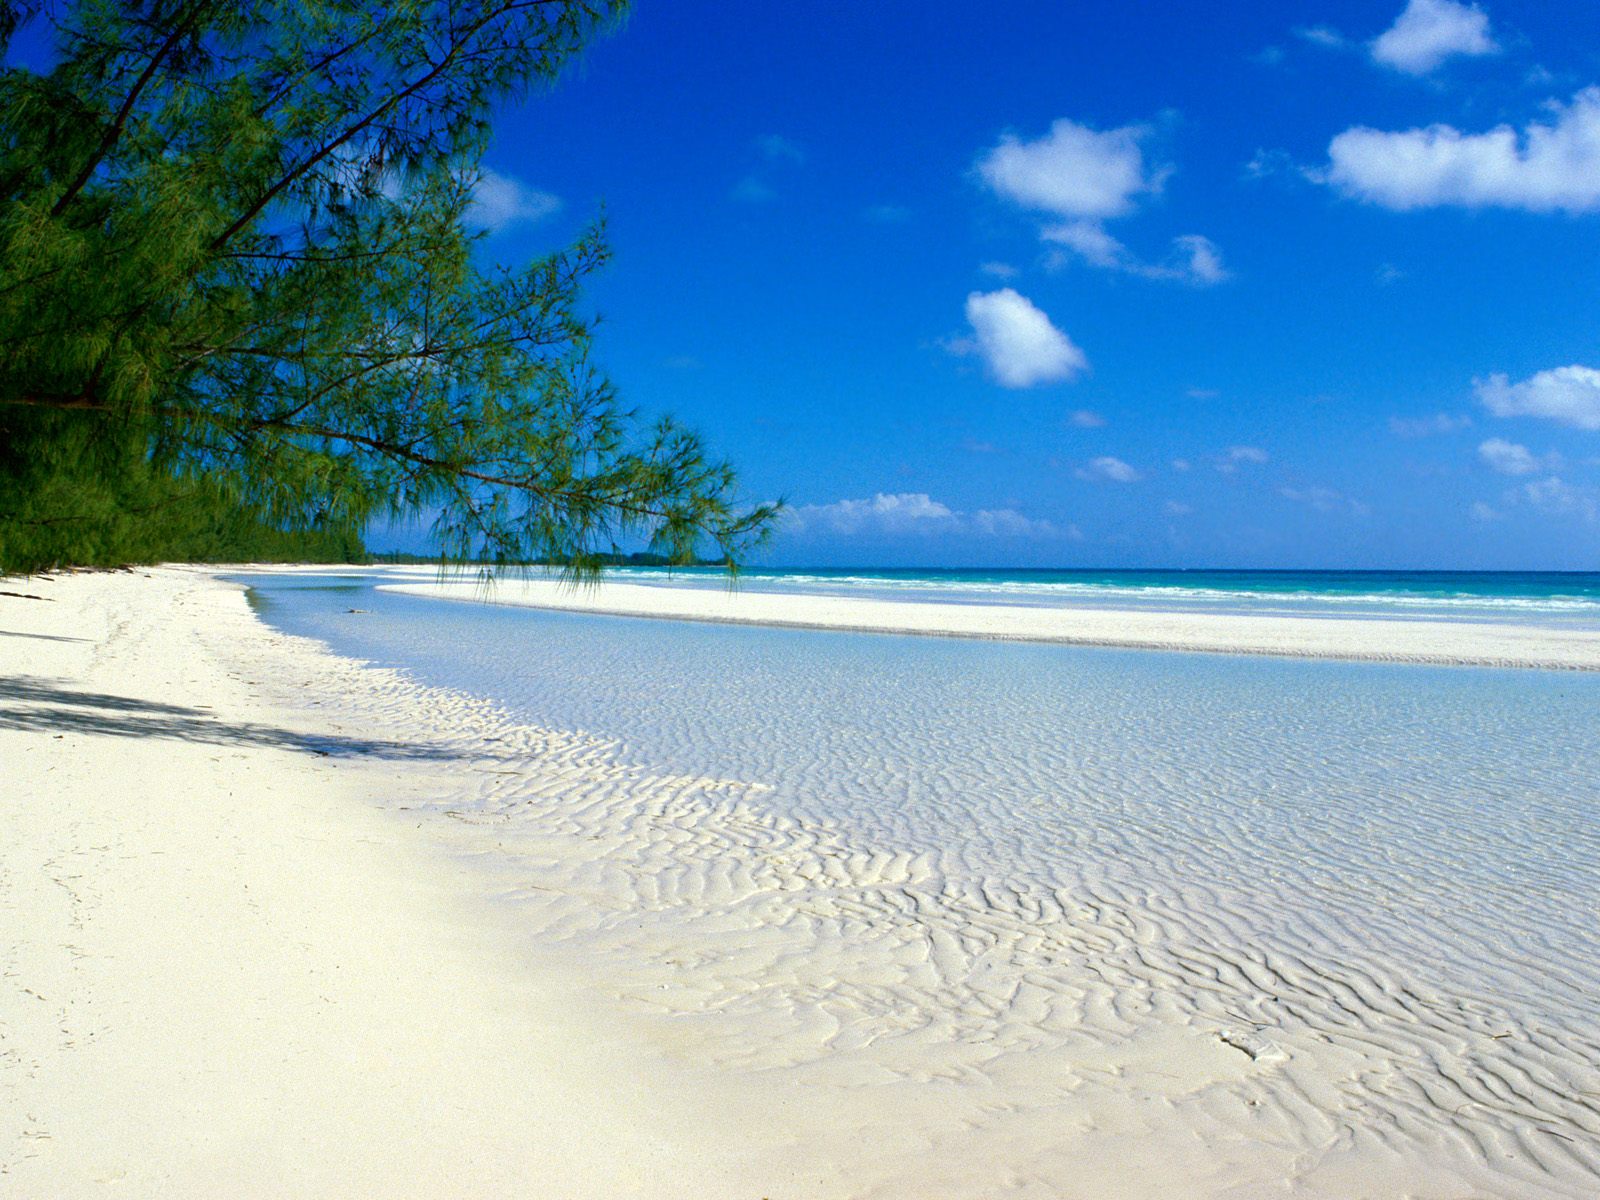 http://3.bp.blogspot.com/_PGCSPGirRog/TTe2lS3YkAI/AAAAAAAAAKk/ftt27VeFXlc/s1600/Taino+Beach%252C+Bahamas.jpg